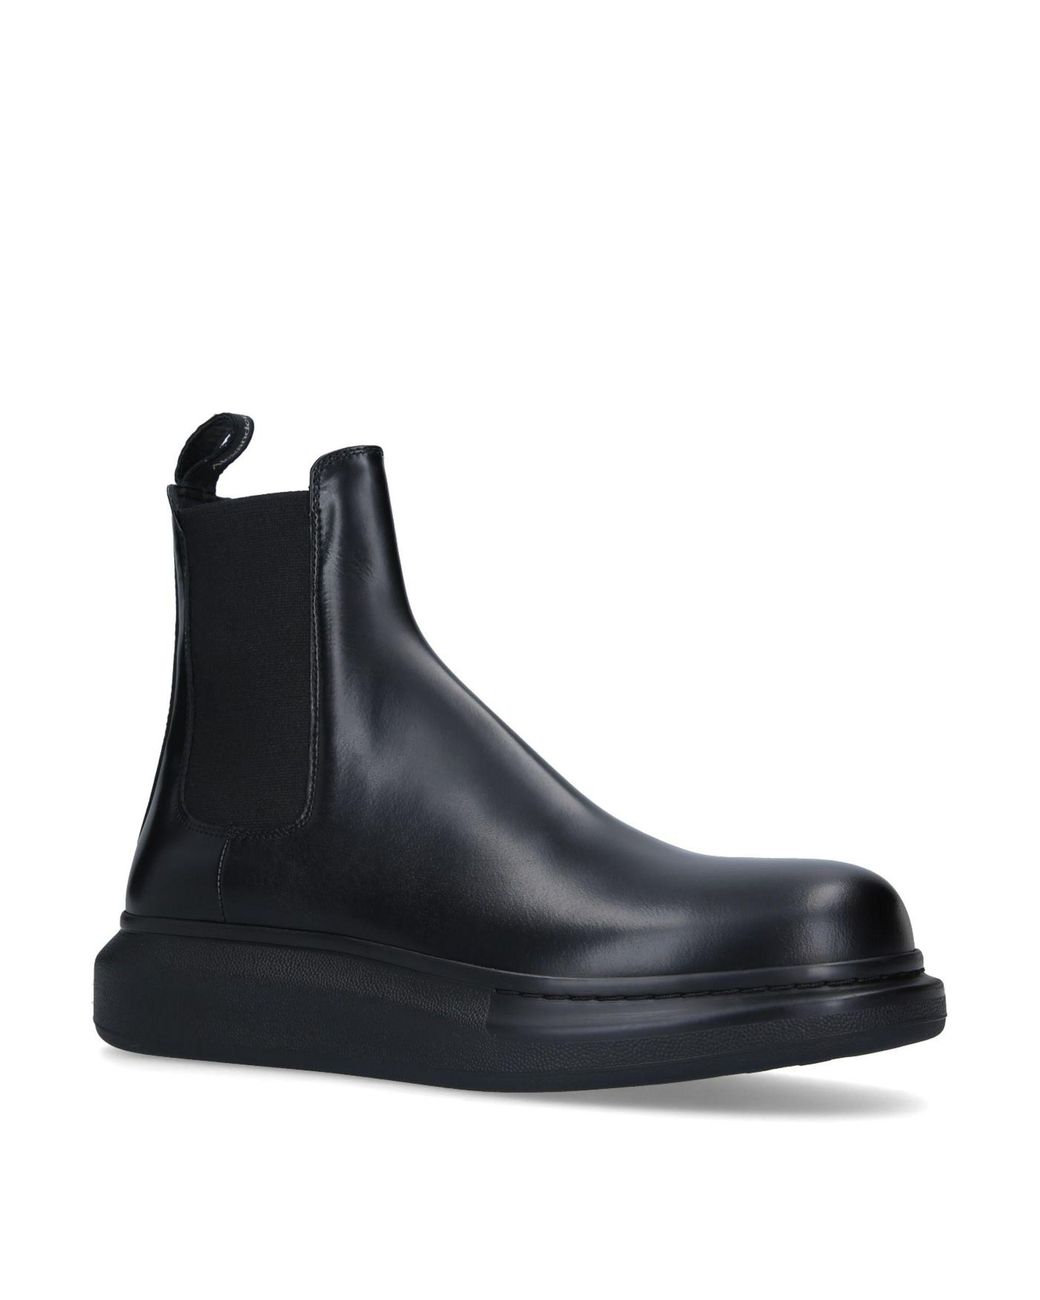 Alexander McQueen Leather Chelsea Boot Sneakers in Black for Men - Lyst